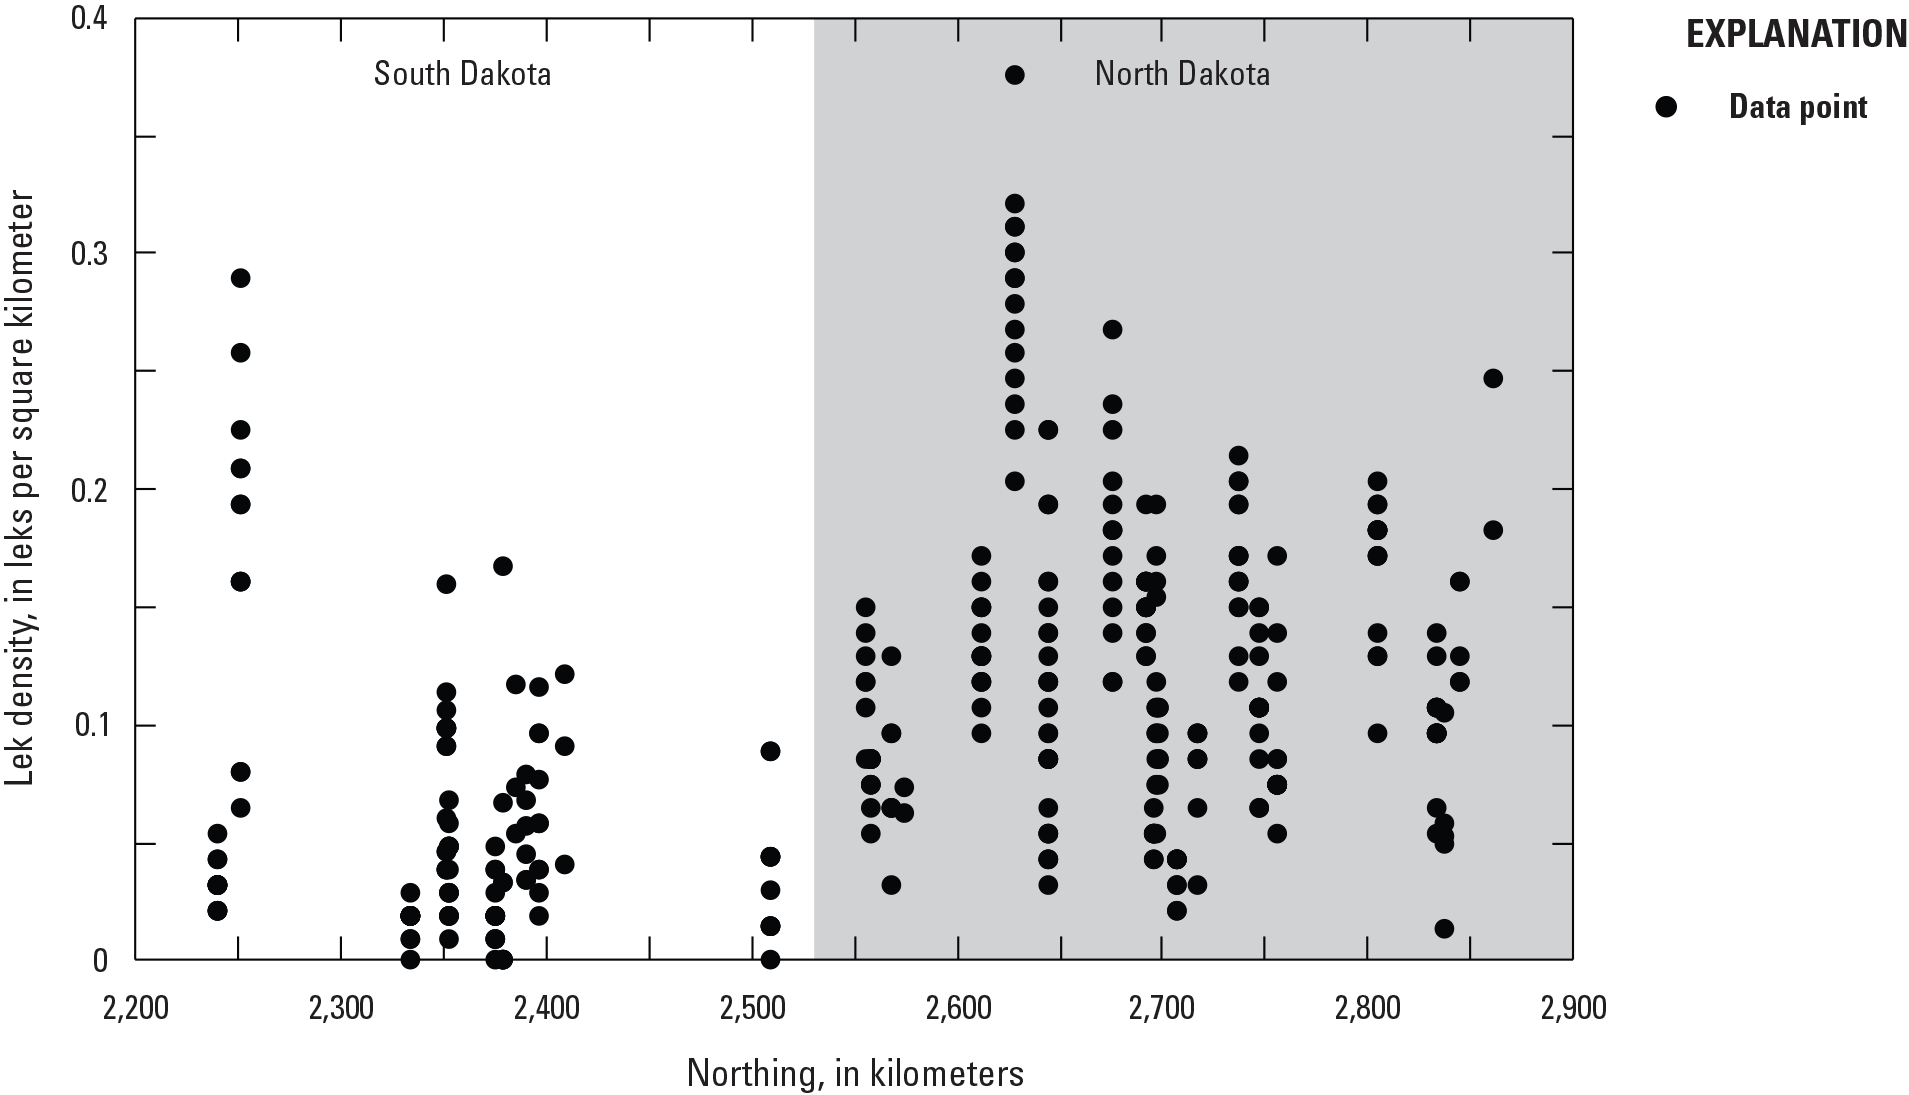 Sharp-tailed grouse lek density increased with increasing northing in North Dakota
                        than South Dakota